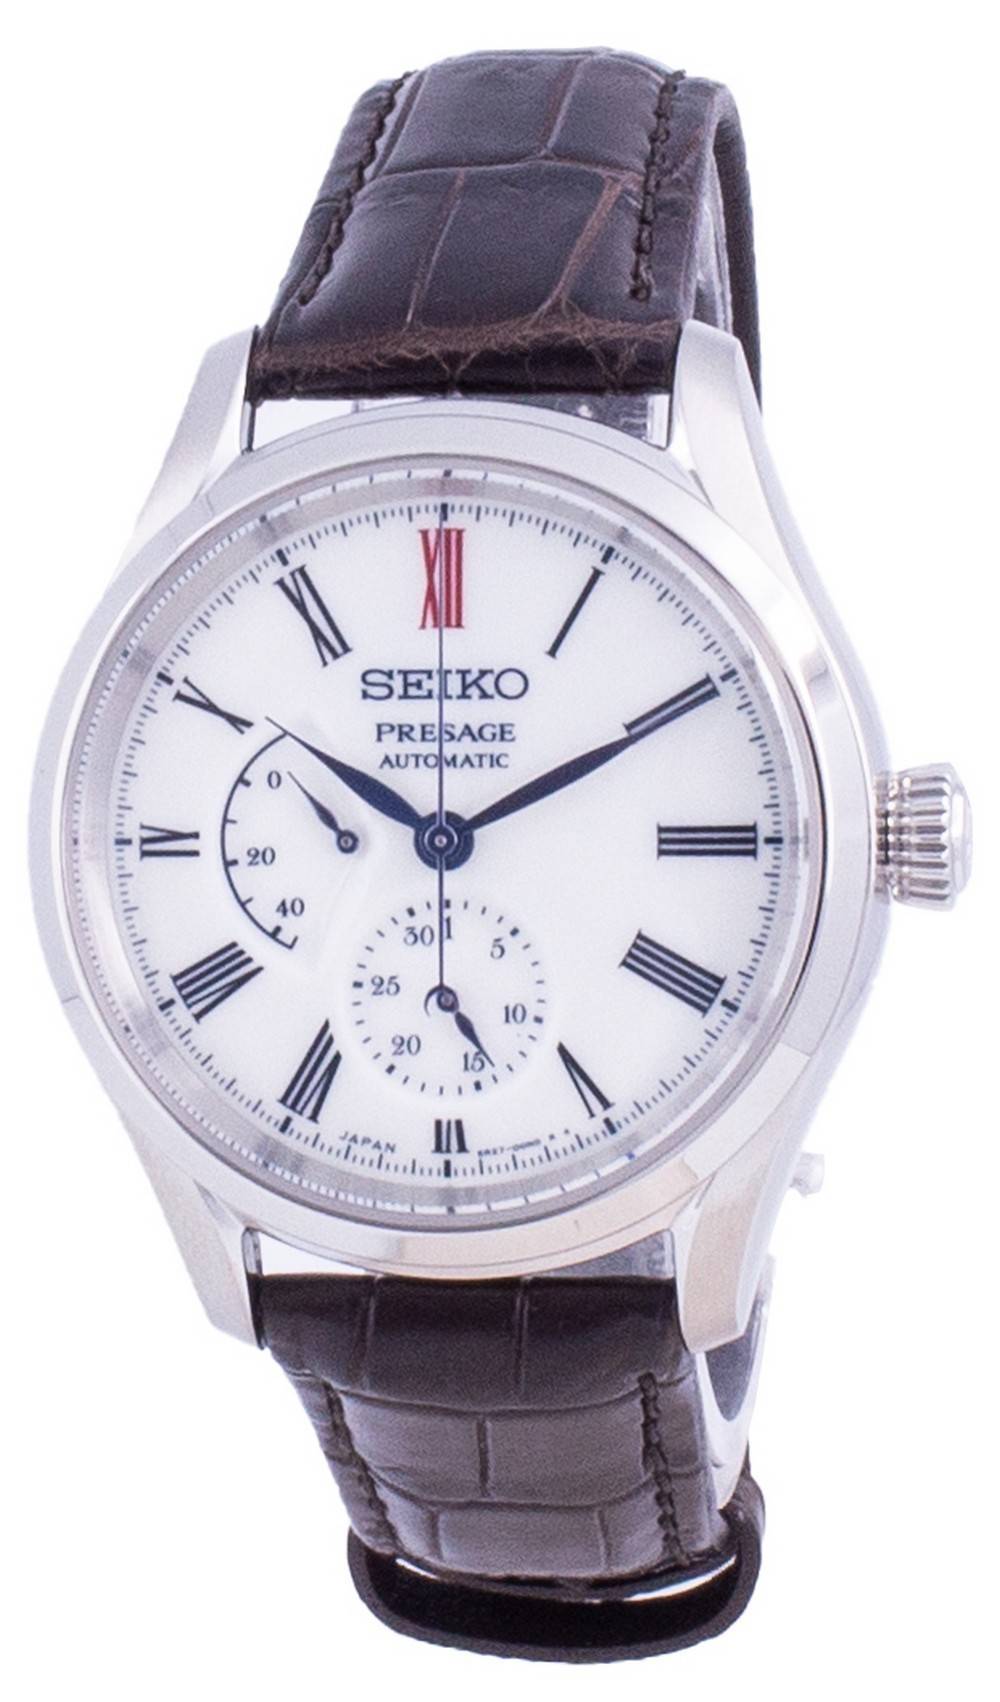 Đồng hồ Seiko Presage Arita Porcelain Automatic SPB093J SPB093J1 SPB093  100M dành cho nam vi